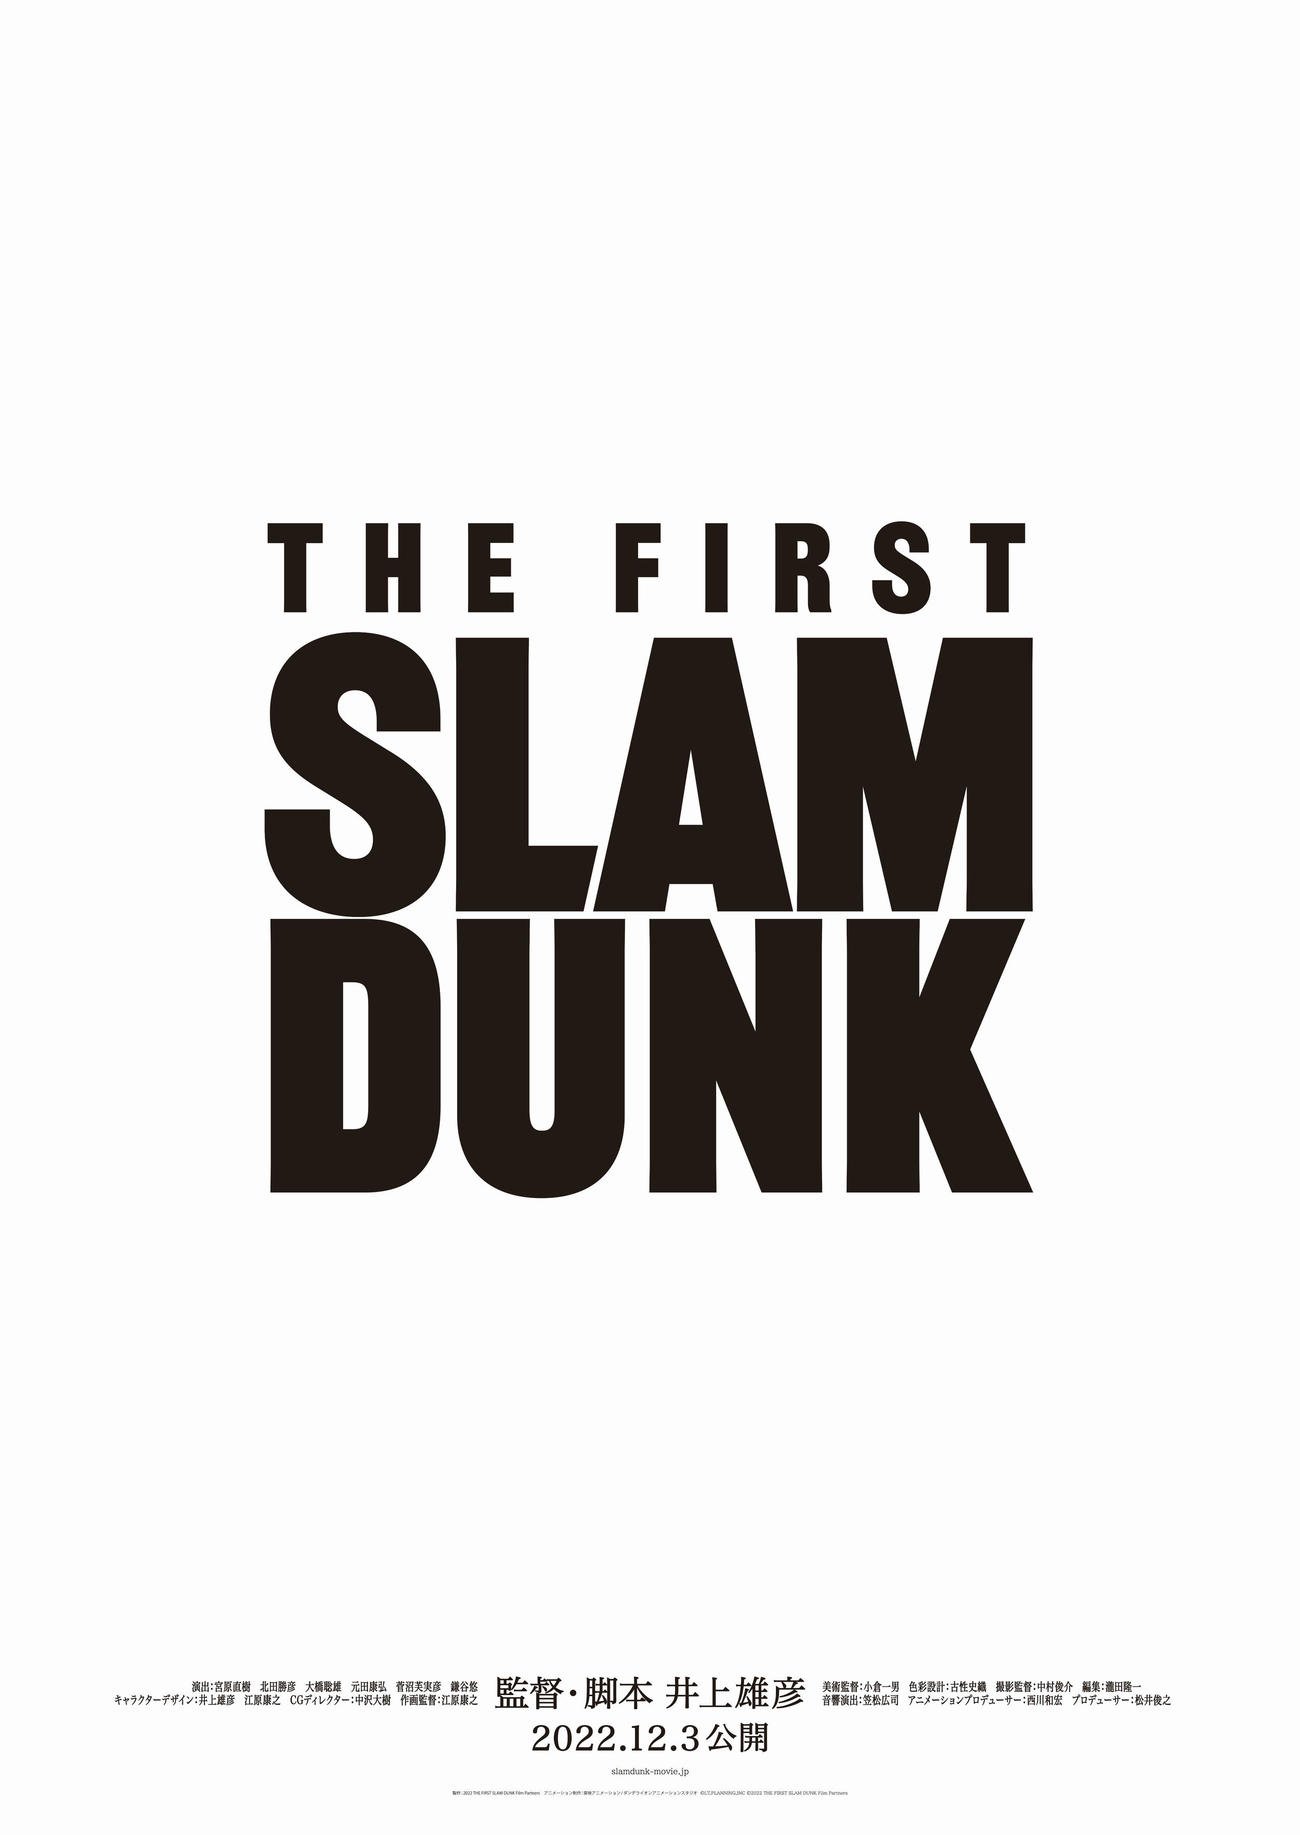 アニメ映画「THE FIRST SLAM DUNK」のロゴ